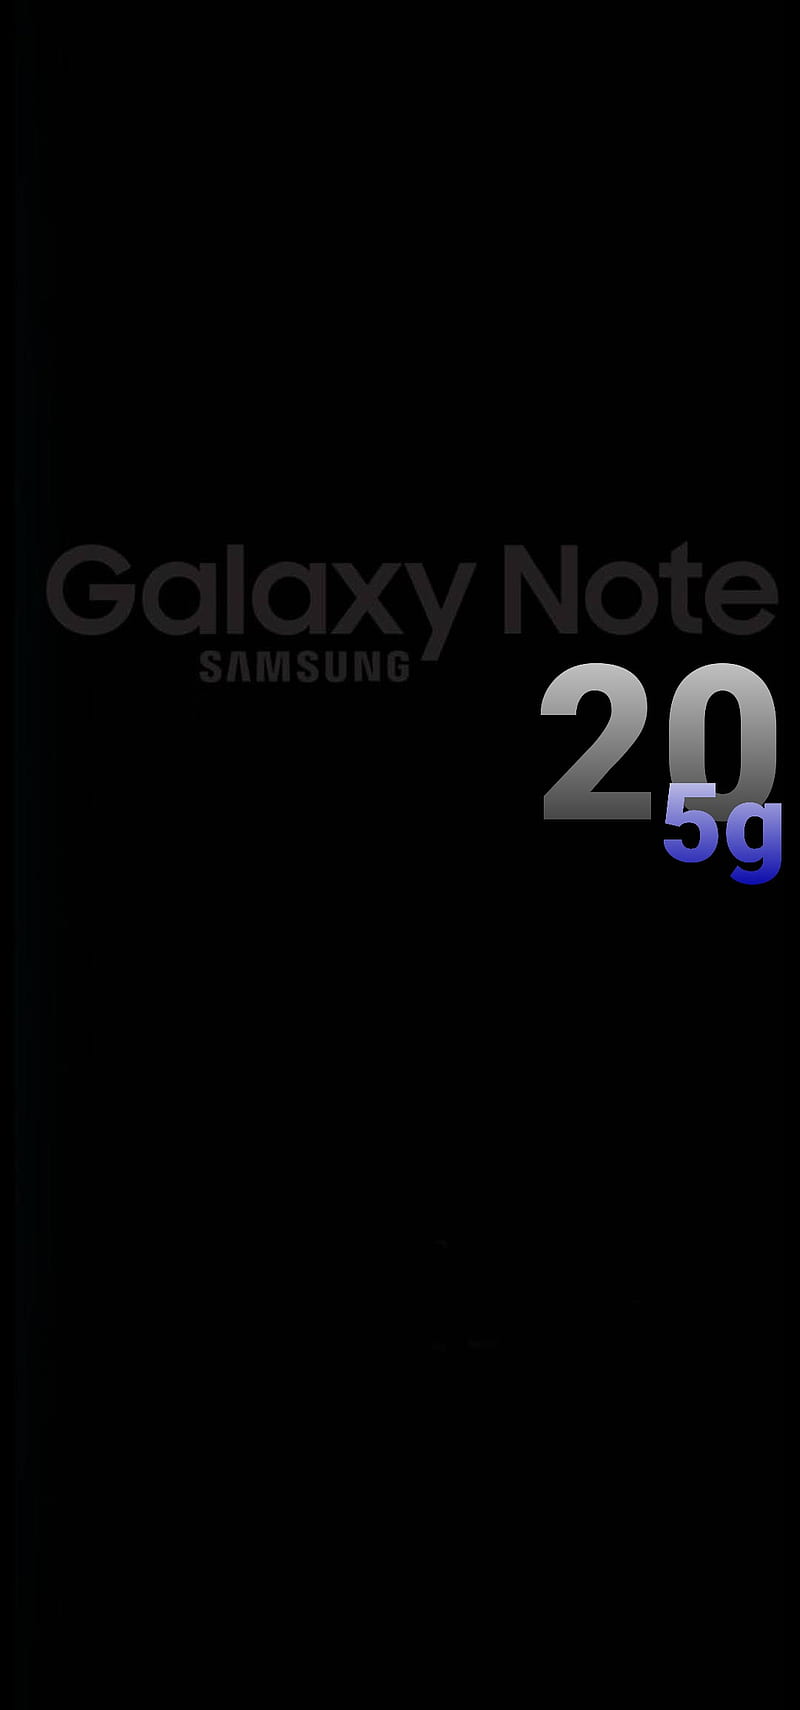 Quen thuộc nhưng vẫn luôn mới lạ! Samsung Galaxy Note 20 5g sở hữu thiết kế khác biệt, thành công lớn trên toàn cầu với cấu hình mạnh mẽ, đầy đủ tính năng tiện ích đáp ứng mọi nhu cầu sử dụng smartphone hiện đại của bạn. Cùng ngắm nhìn hình ảnh chân thật của sản phẩm và nắm rõ lý do tại sao nó luôn là đối tượng săn đón của giới công nghệ nhé!